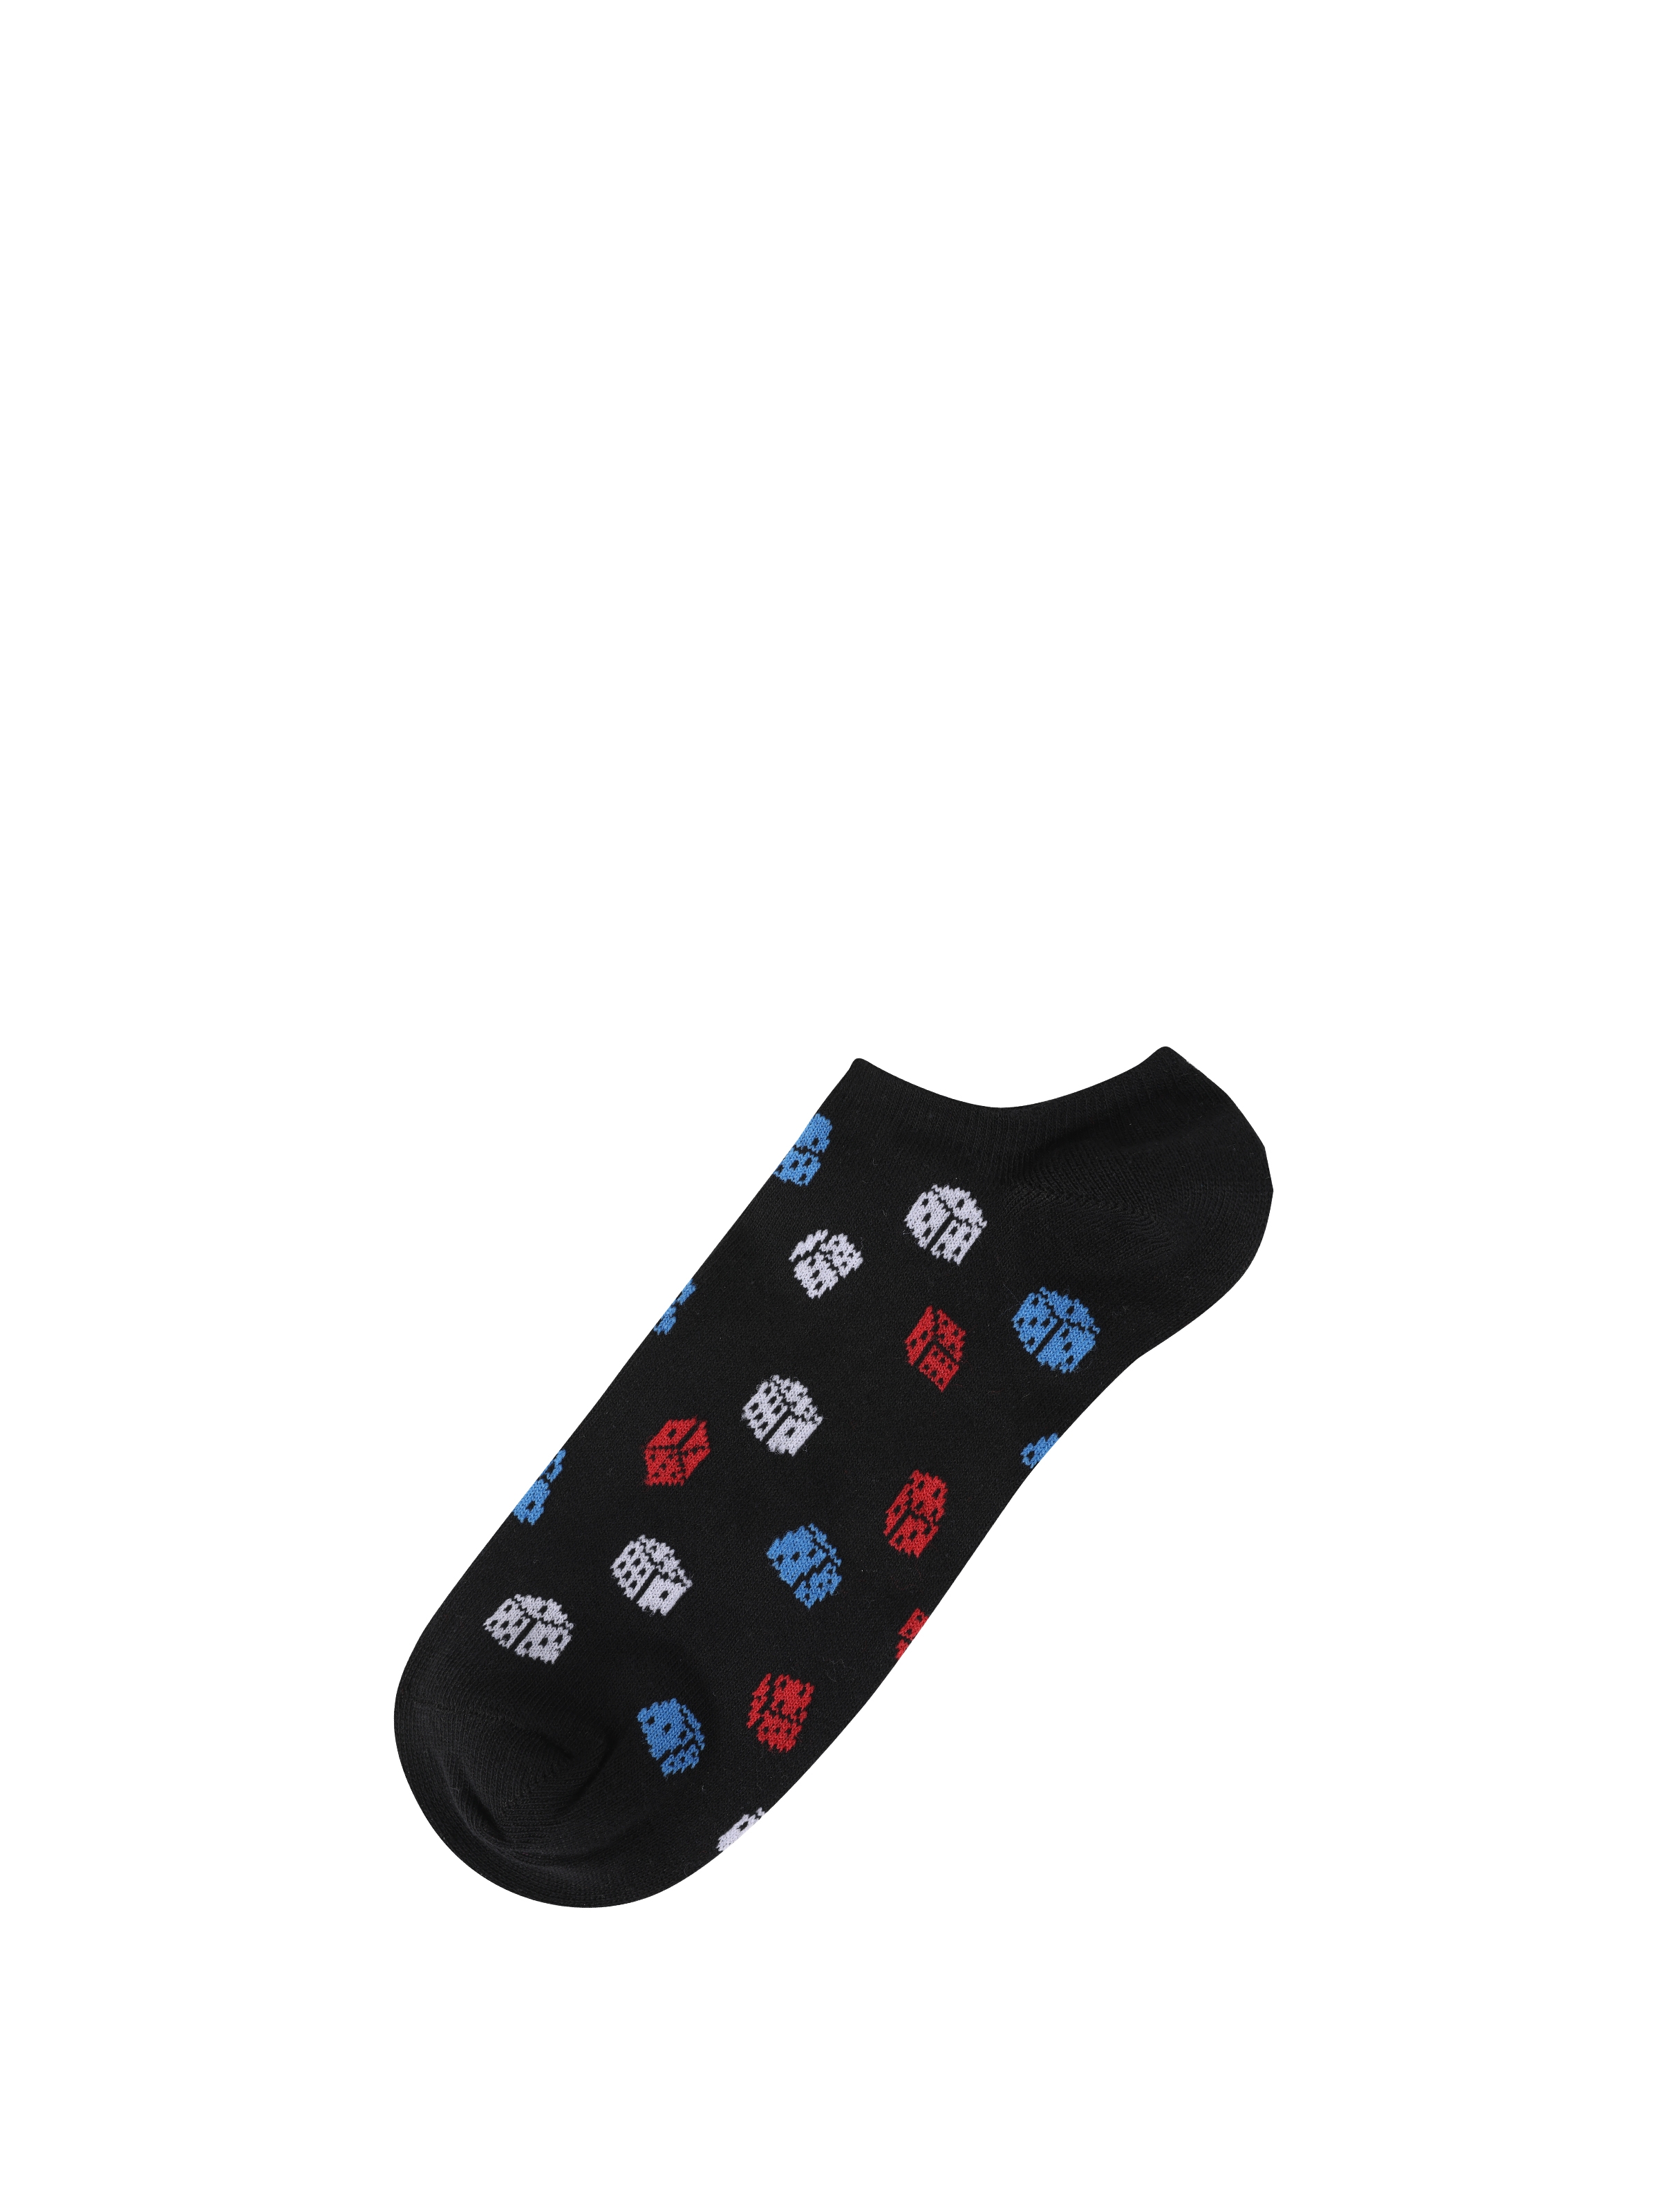 Baskılı Siyah Erkek Çorap Cl1063004